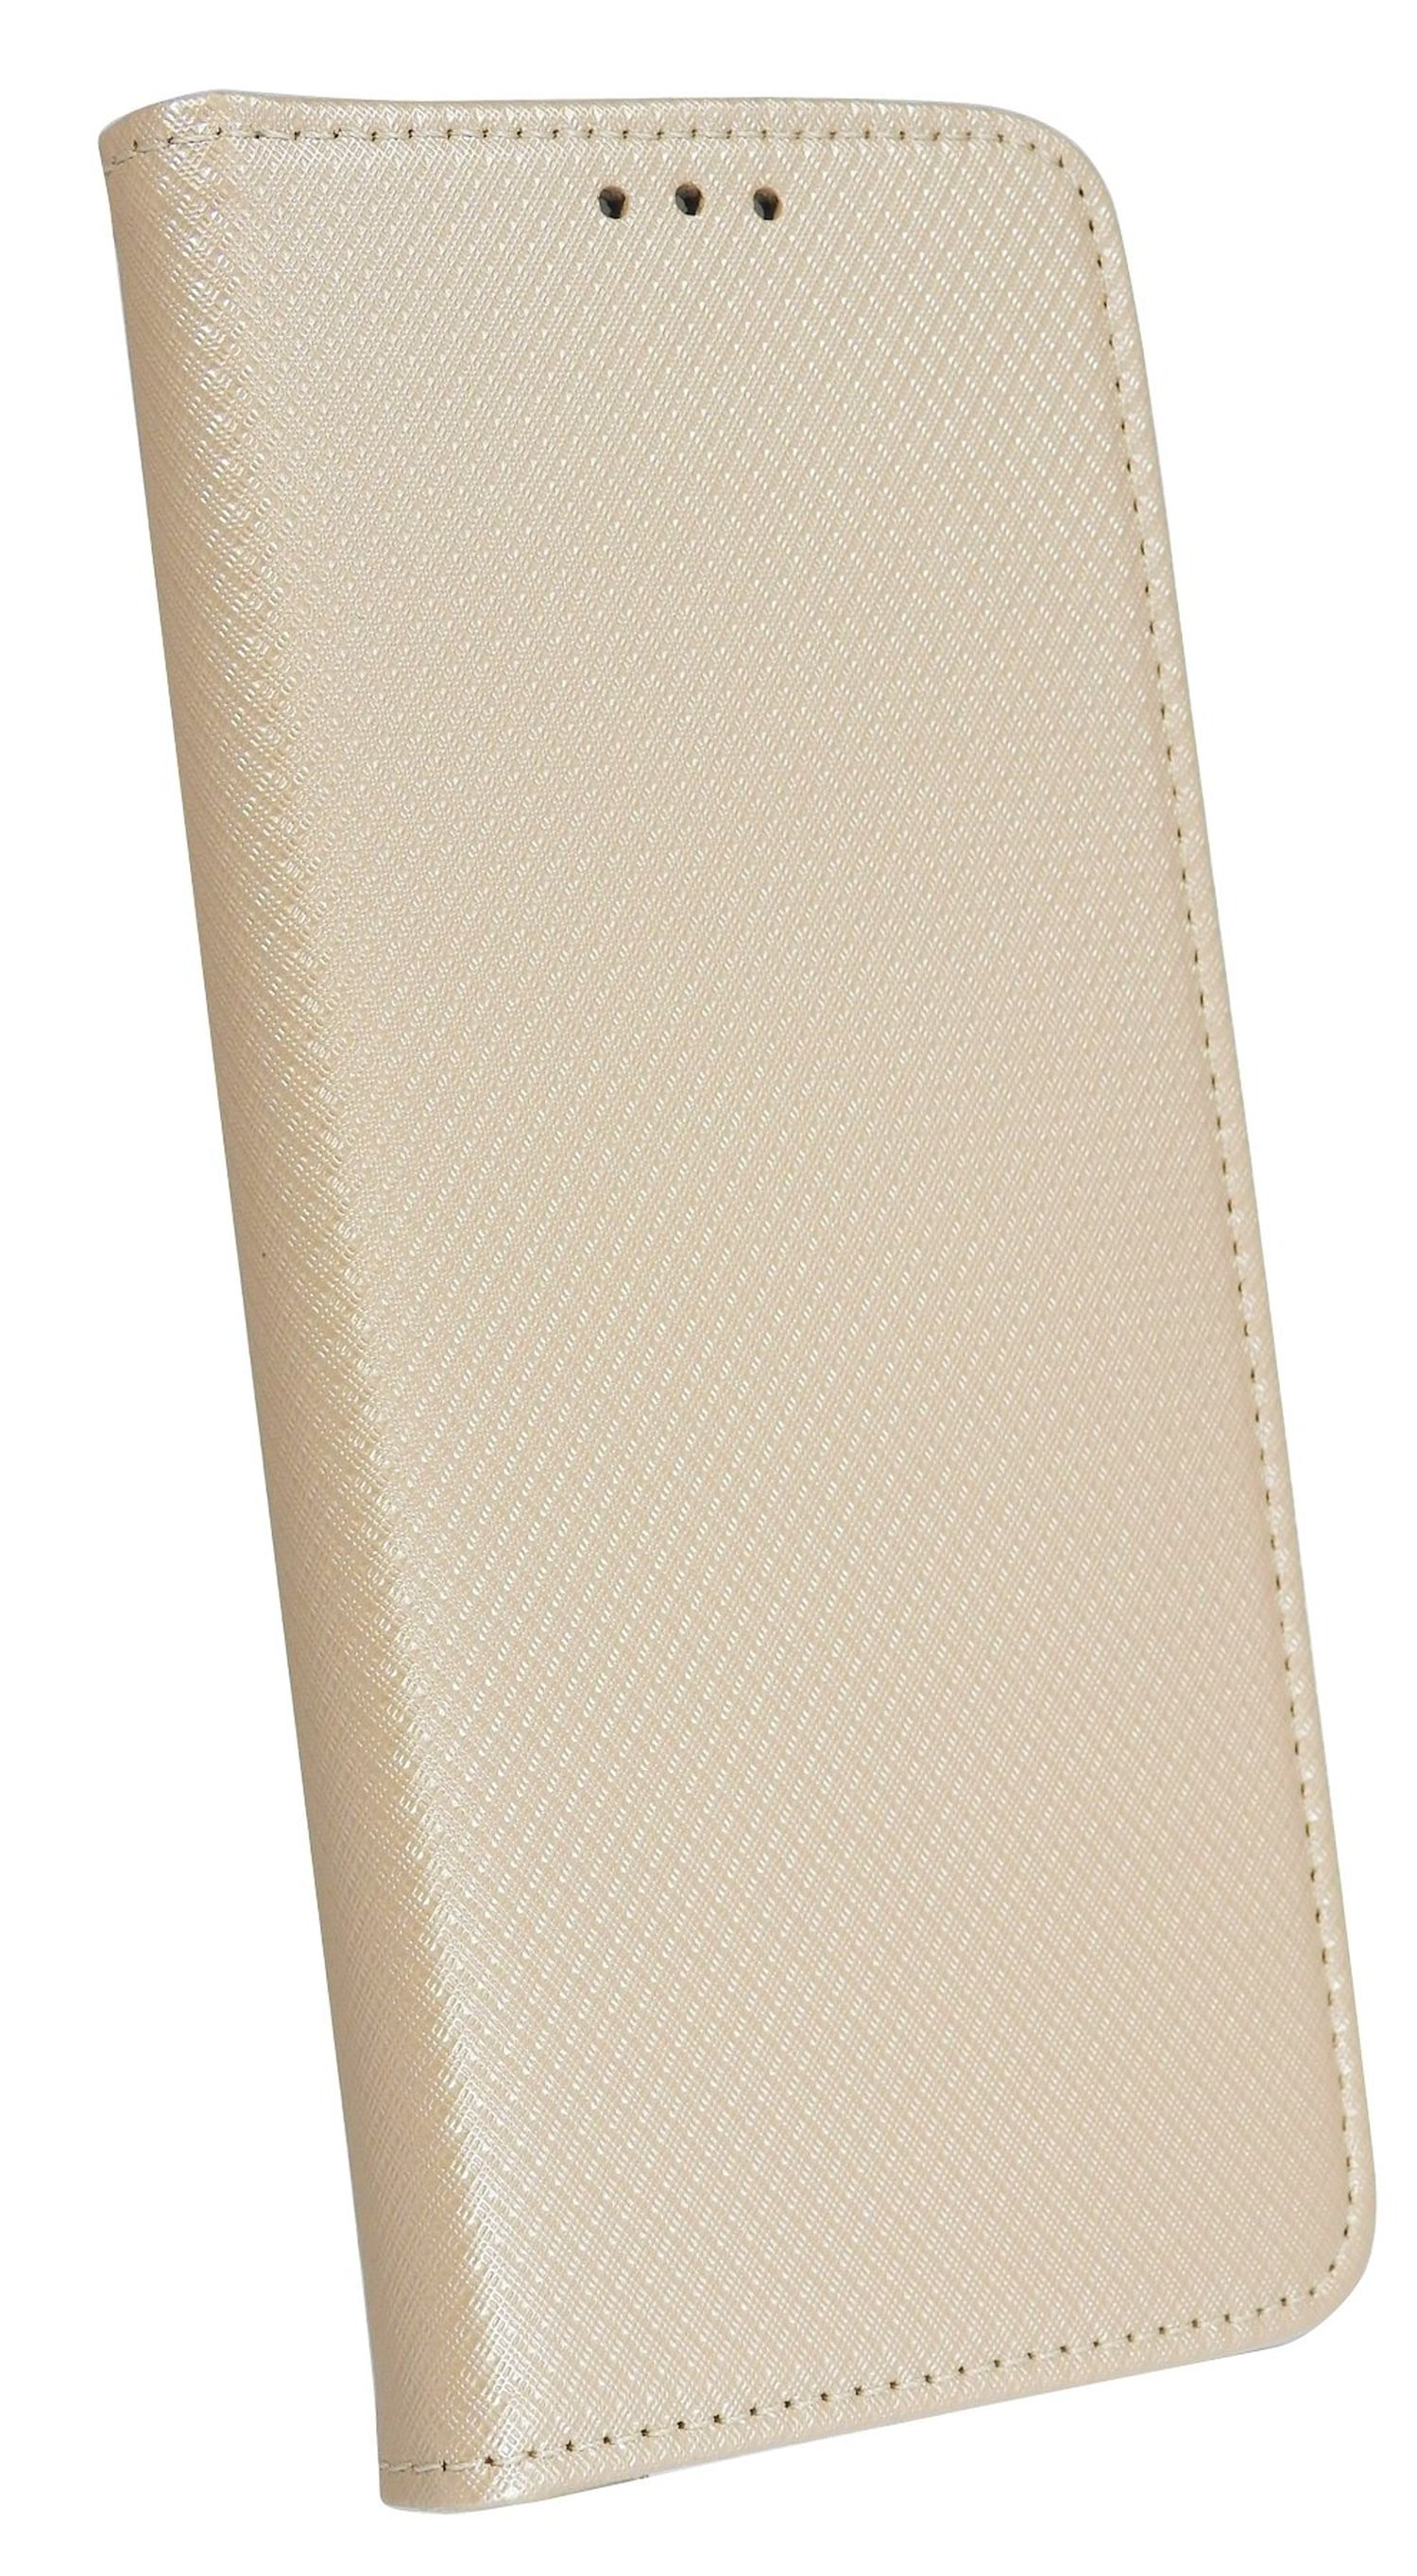 COFI Smart Case, Galaxy Gold Bookcover, Samsung, M51